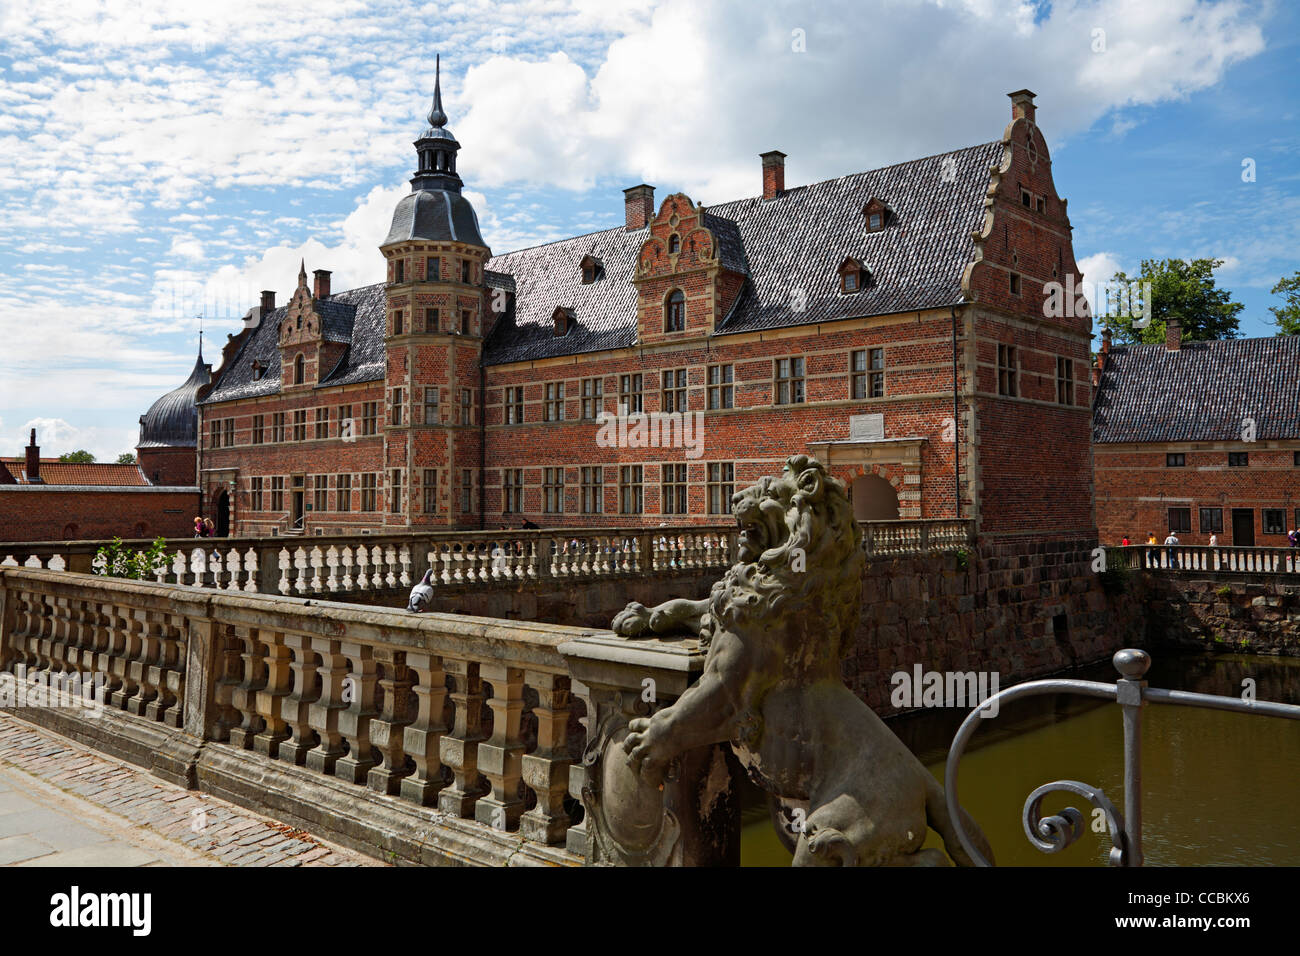 Das Schloss Frederiksborg im niederländischen Renaissance-Stil und die Brücke über den Wassergraben in Hillerød, Nordsealand, Dänemark Stockfoto